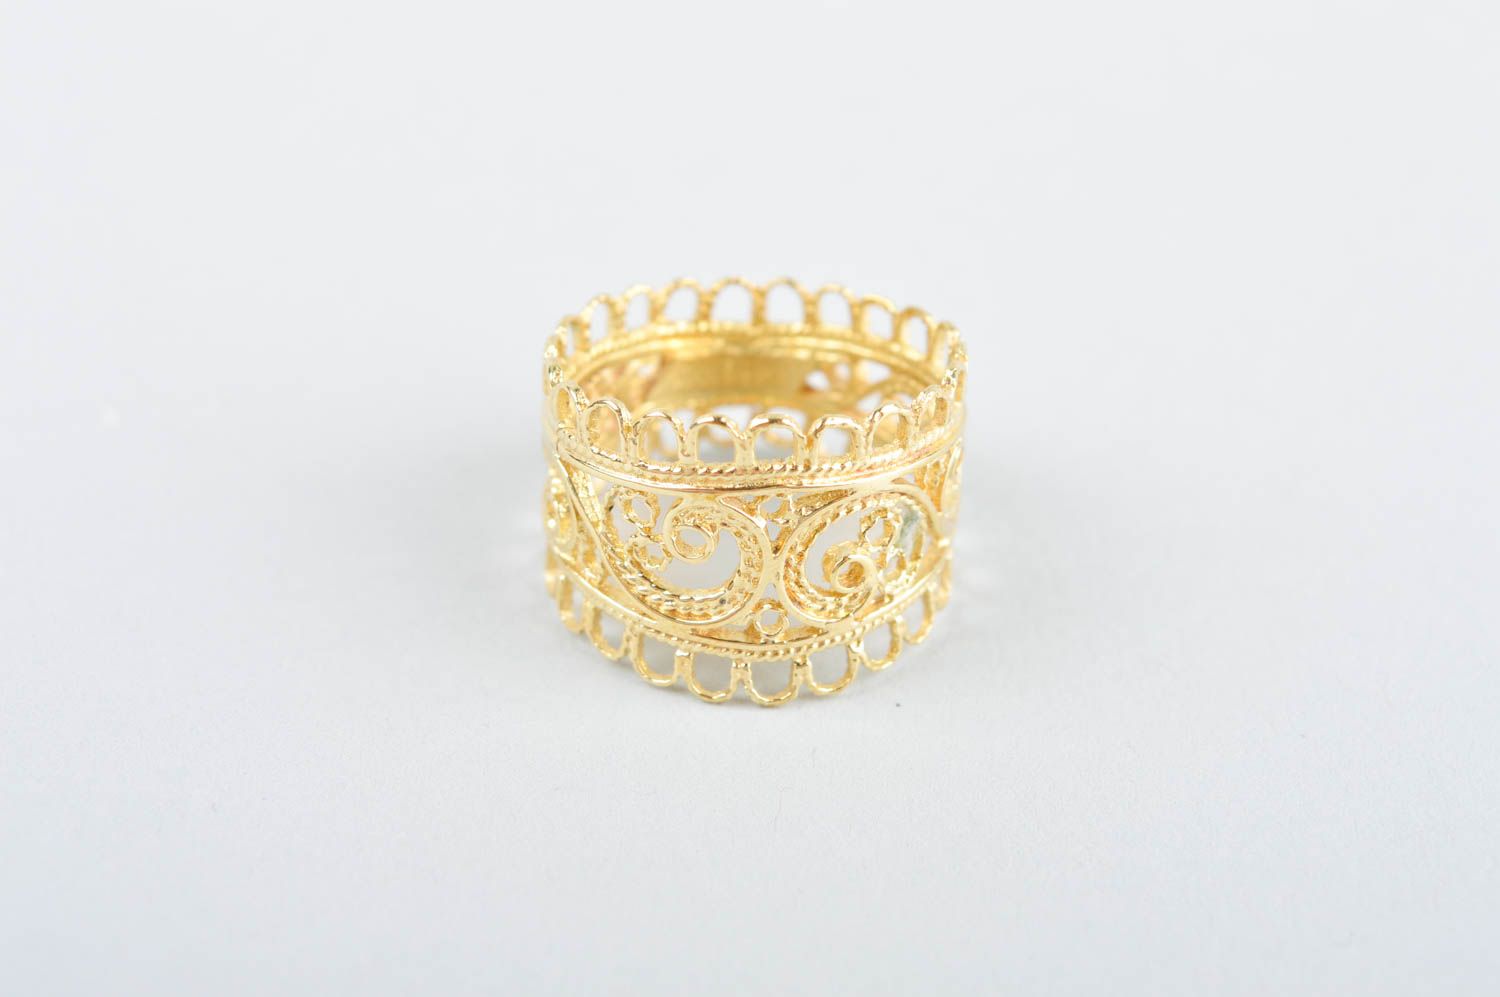 Кольцо ручной работы необычное украшение из латуни оригинальное модное кольцо  фото 2